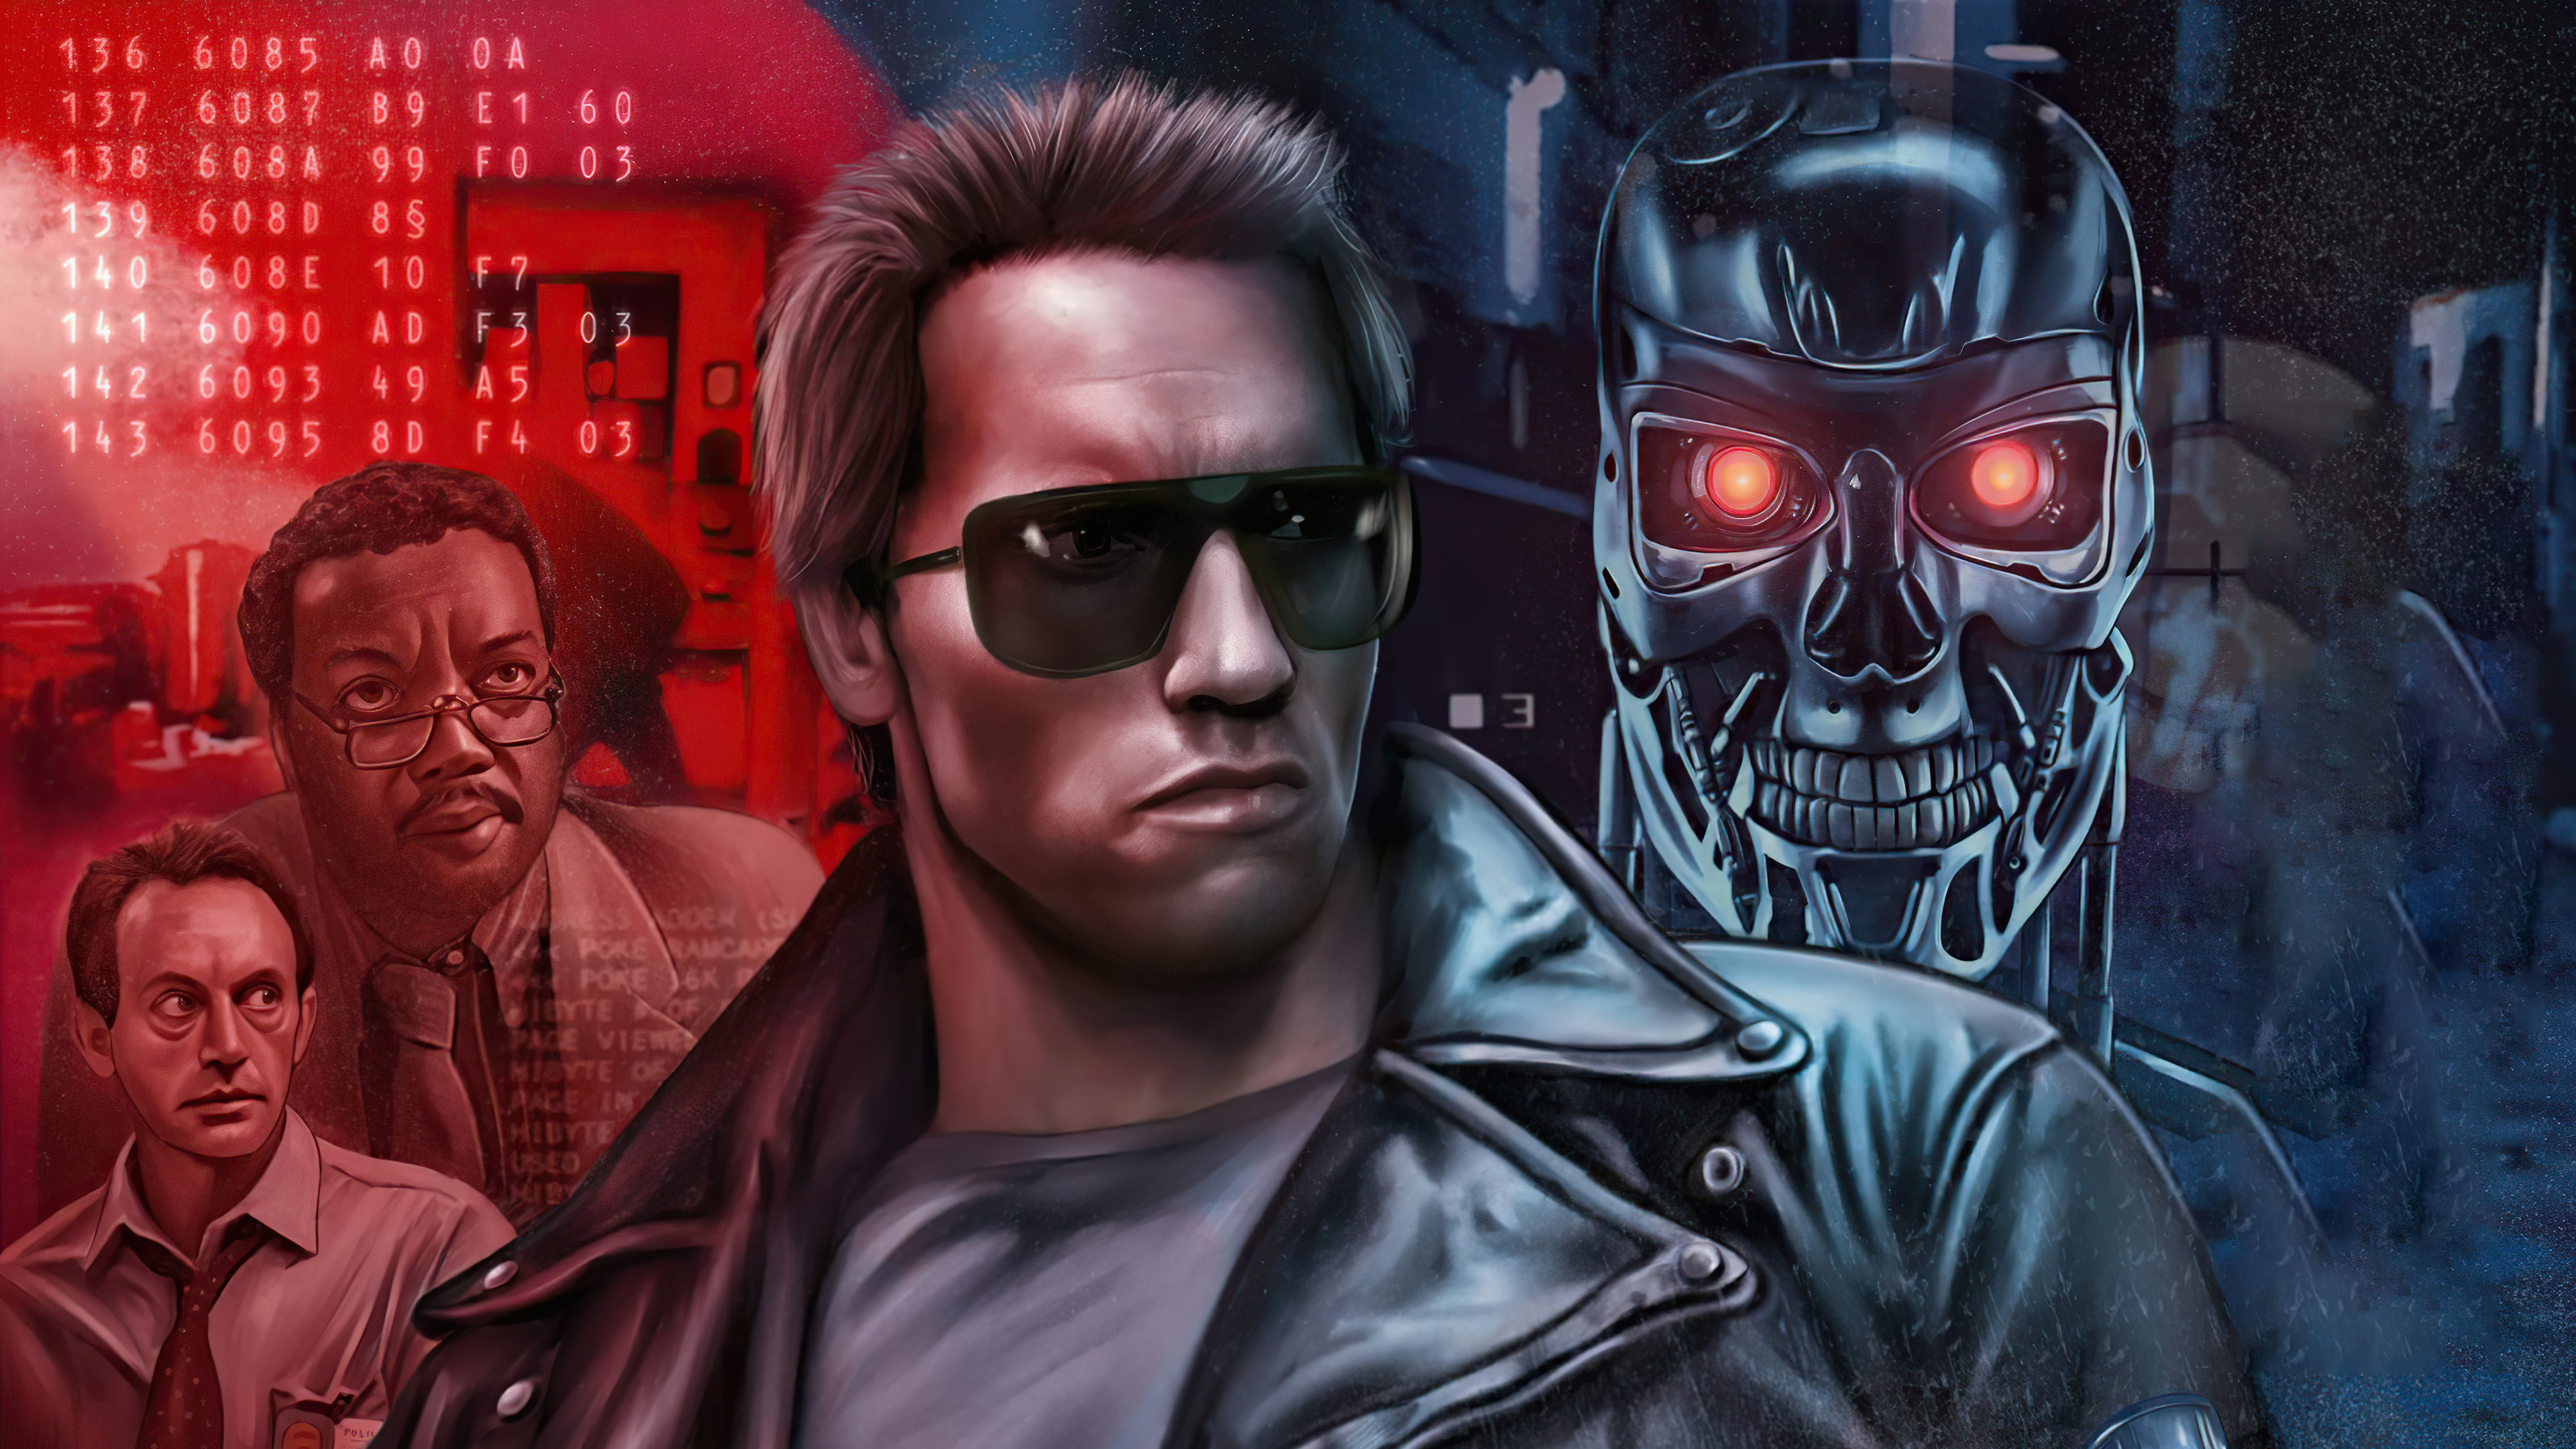 Descarga gratis la imagen Terminator, Películas en el escritorio de tu PC